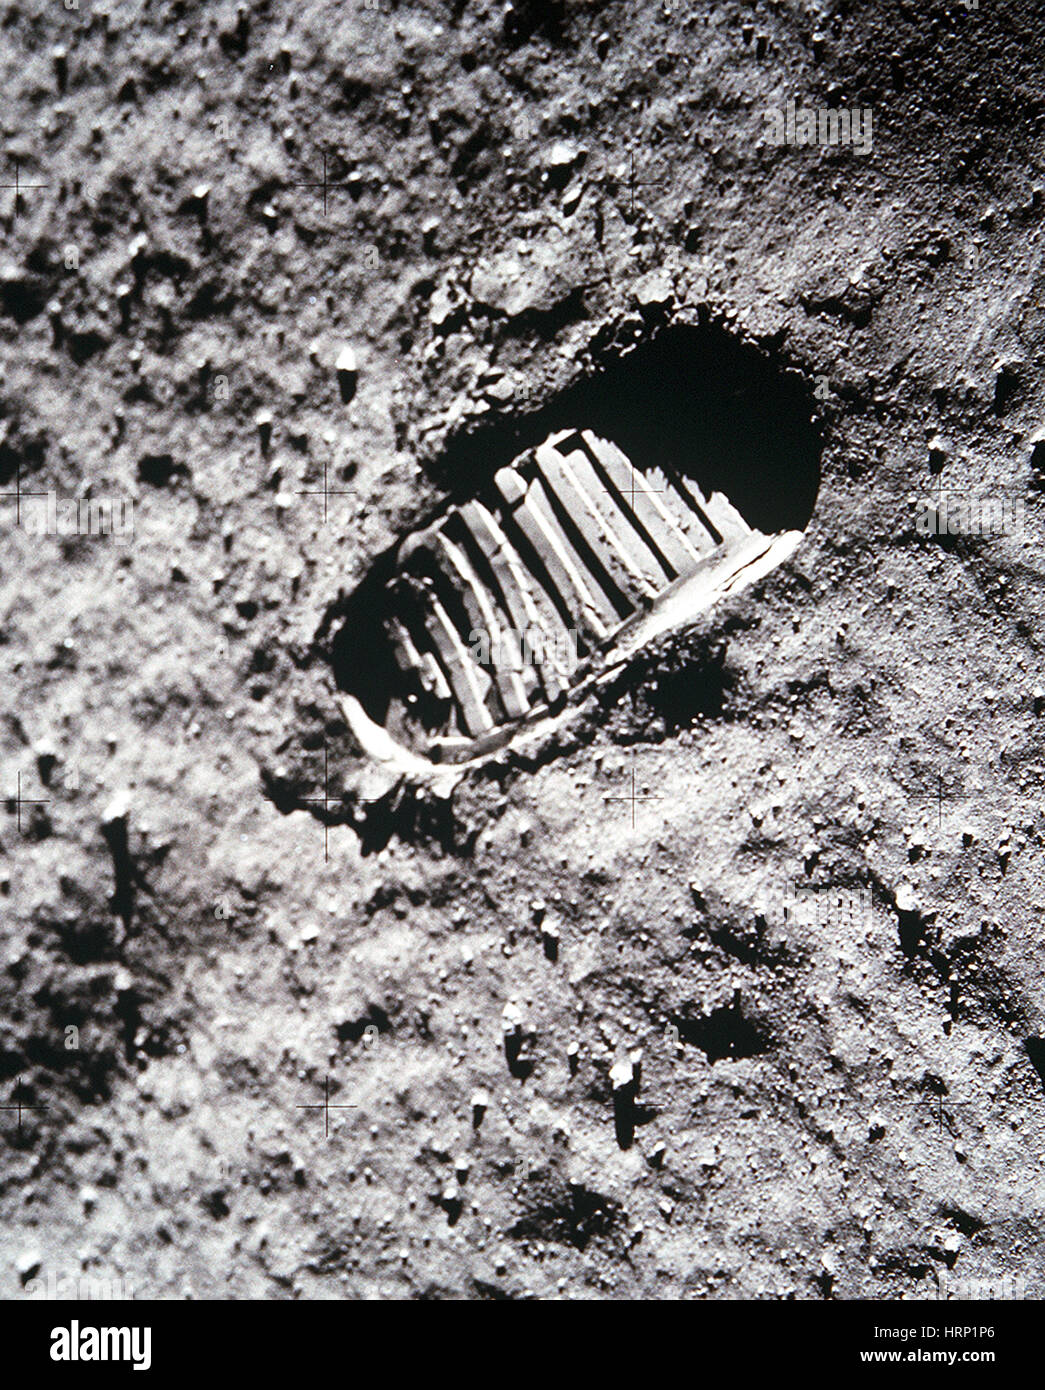 Apollo 11 Footprint on the Moon Stock Photo